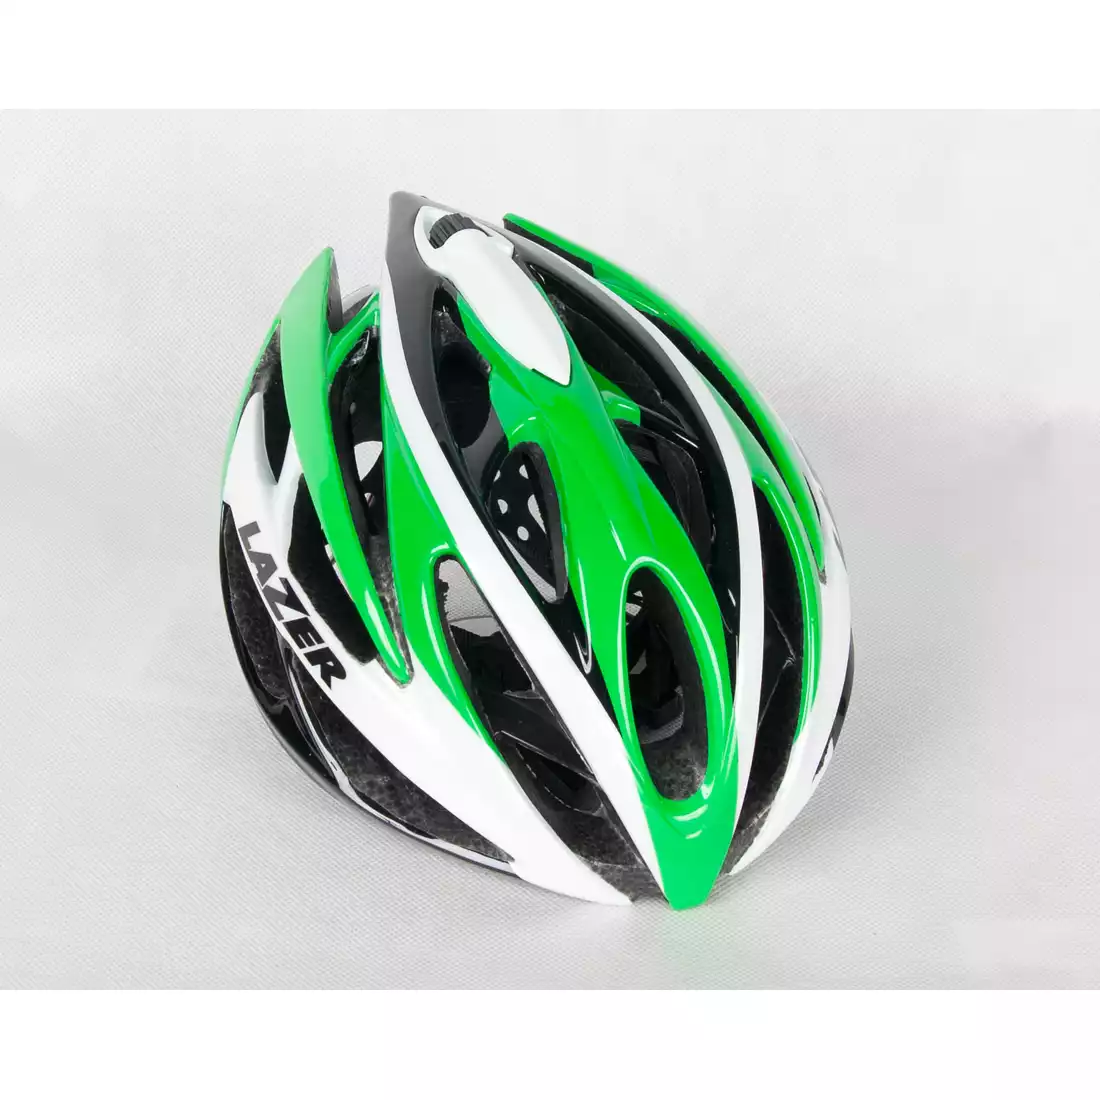 LAZER O2 szosowy kask rowerowy zielono-biały